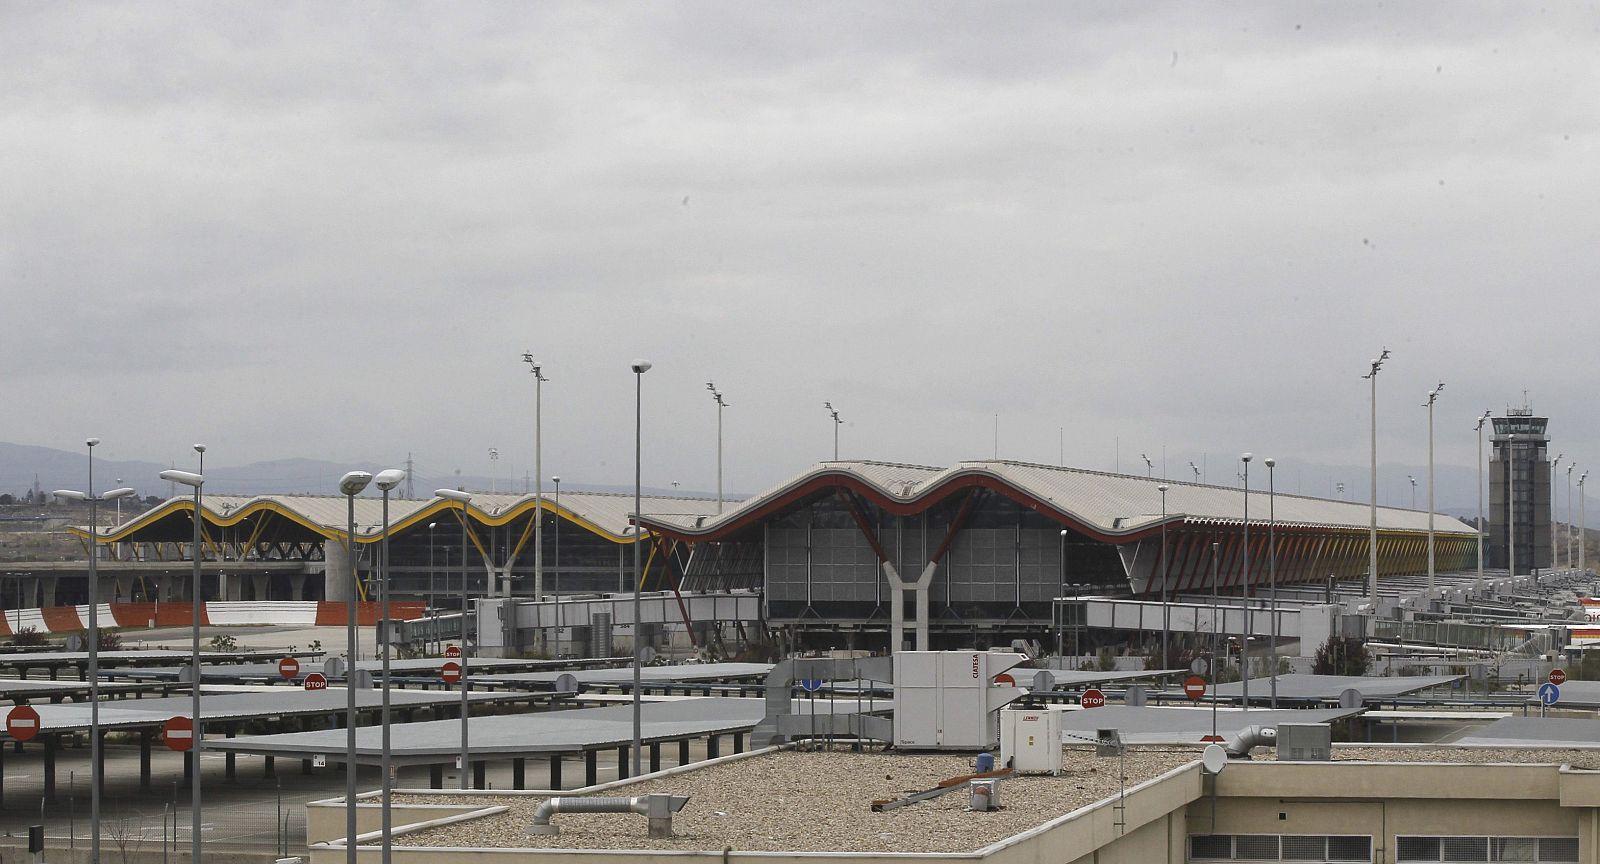 El Gobierno ha aprobado cambiar el nombre del aeropuerto madrileño a "Aeropuerto Adolfo Suárez, Madrid-Barajas".